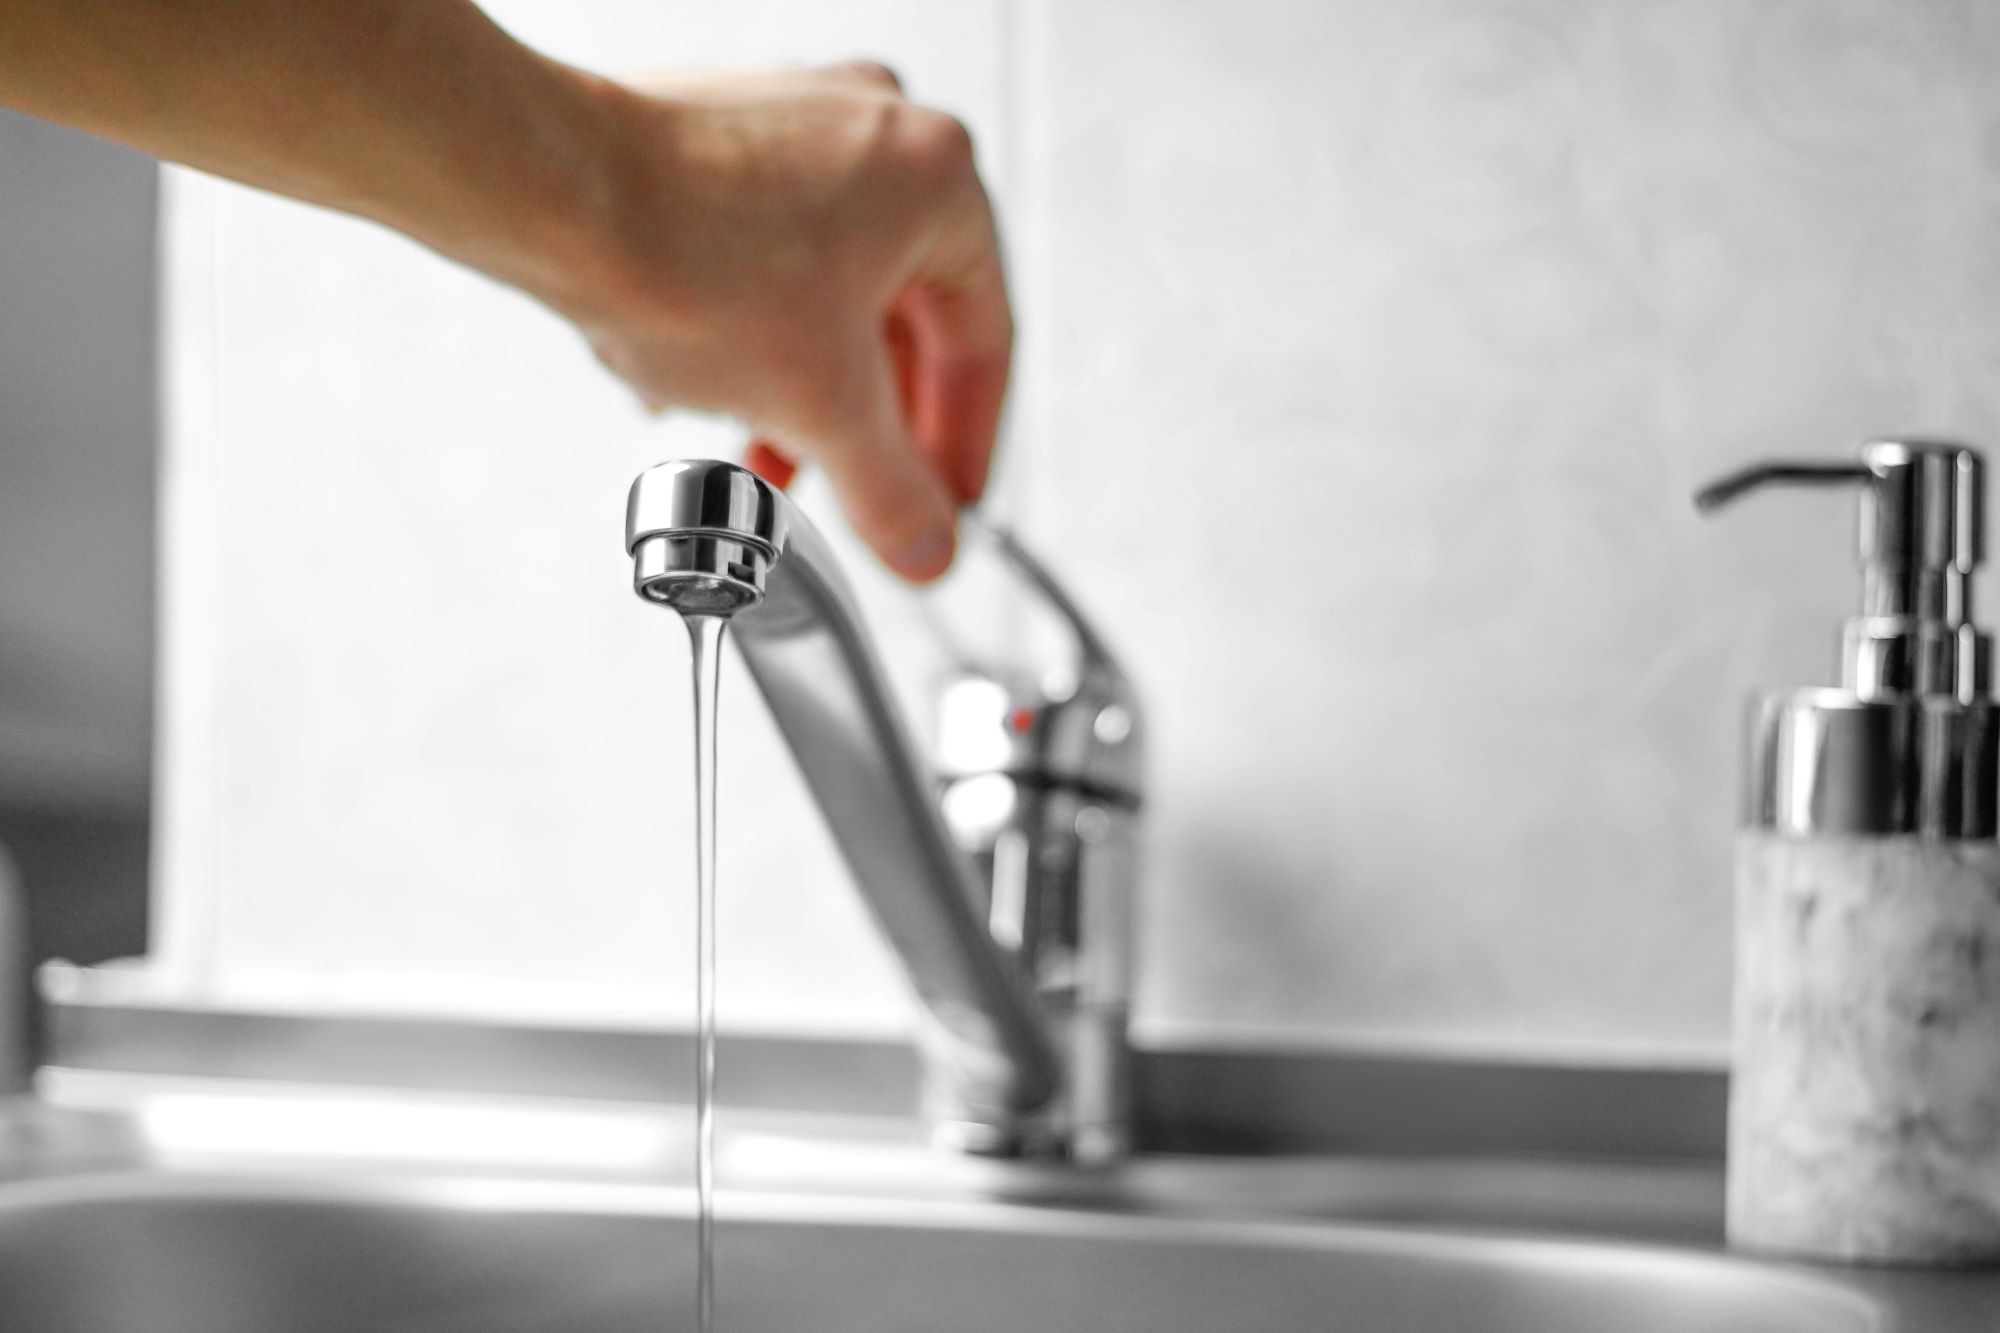 L'installation d'un mousseur sur un robinet permet de réaliser jusqu'à 50% d'économie d'énergie